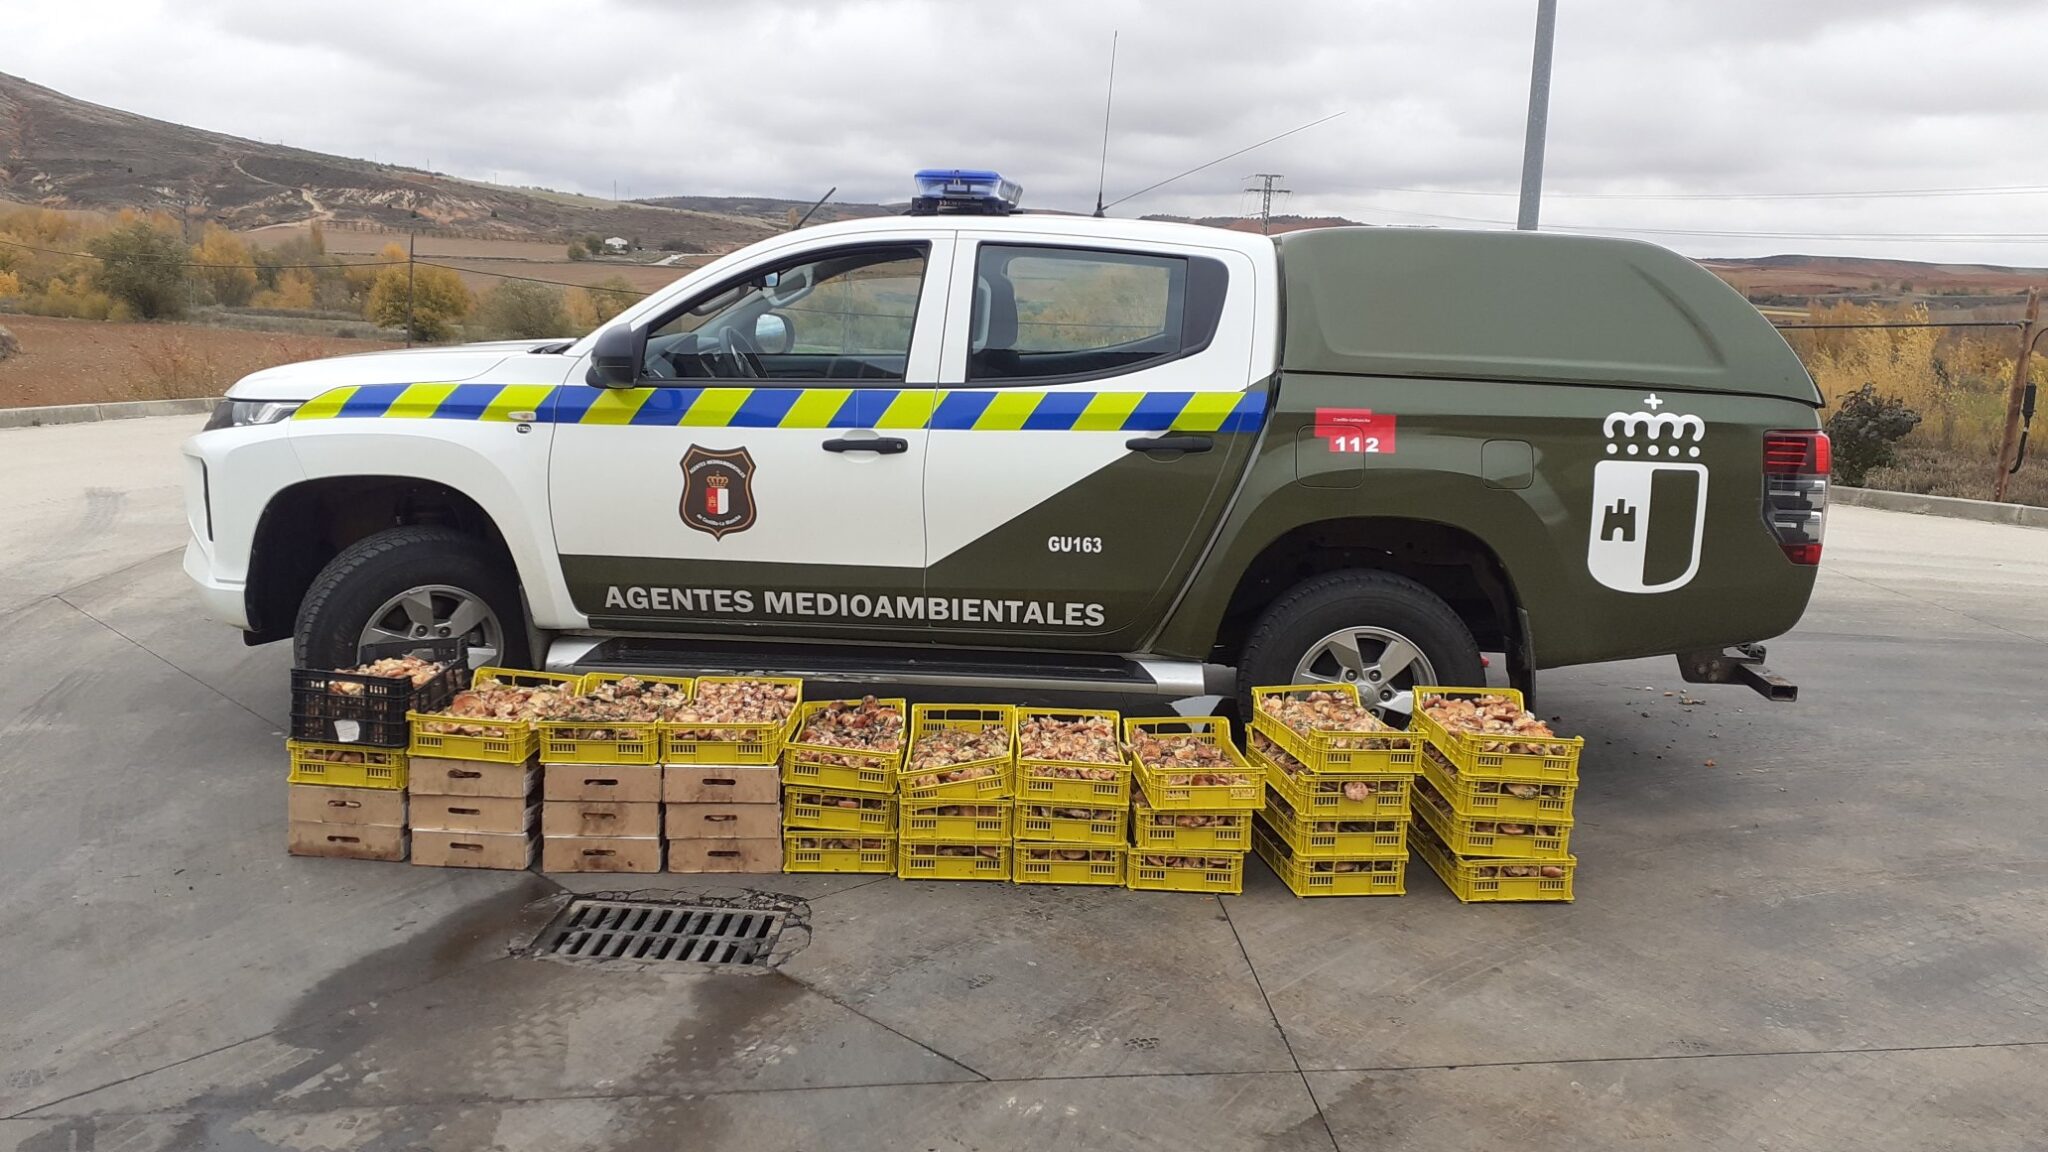 Decomisados 200 kilos de níscales ilegalmente recolectados en la Sierra Norte de Guadalajara